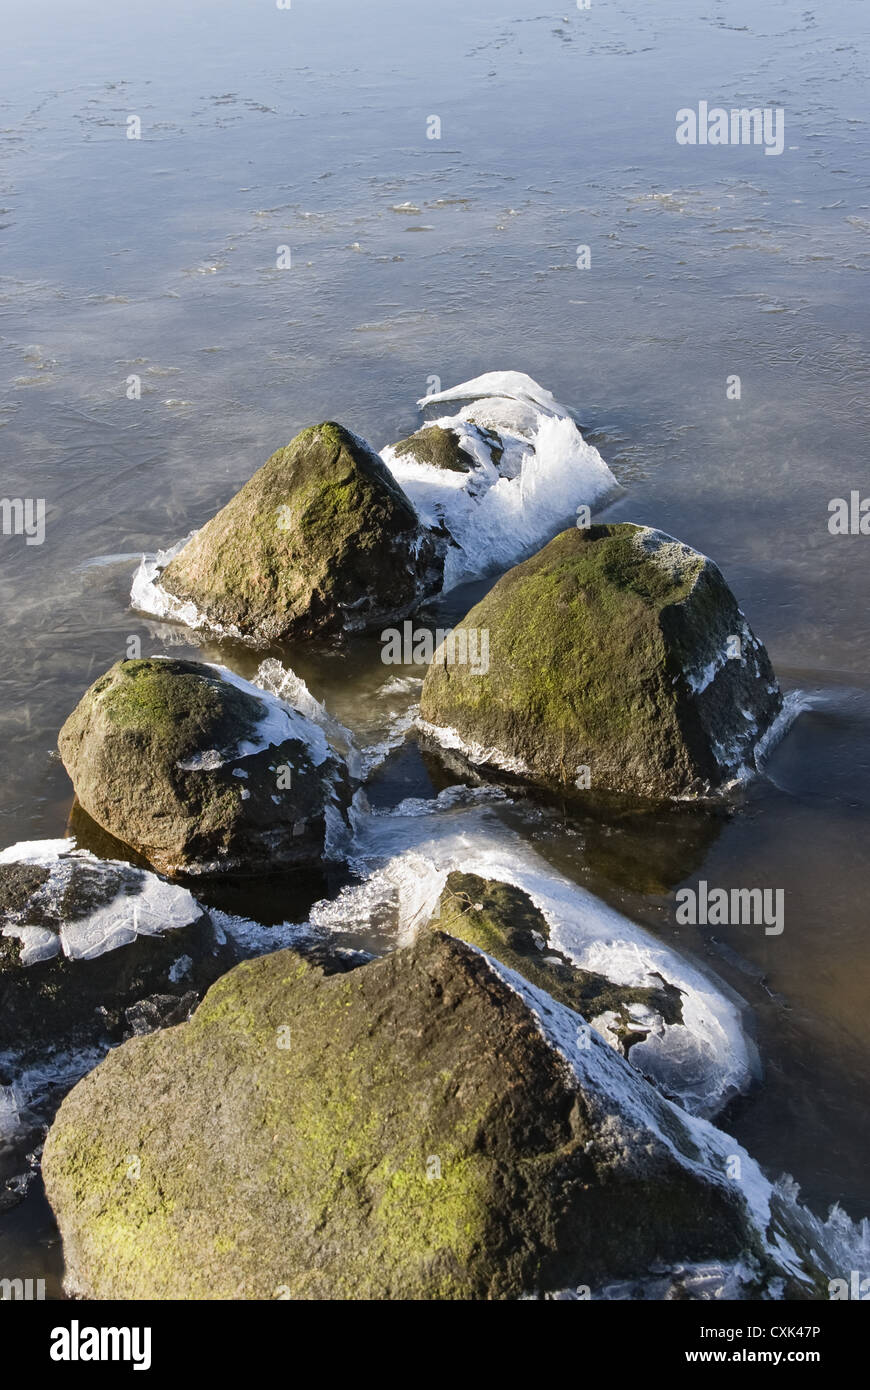 La pietra in acqua con cristalli di ghiaccio Foto Stock